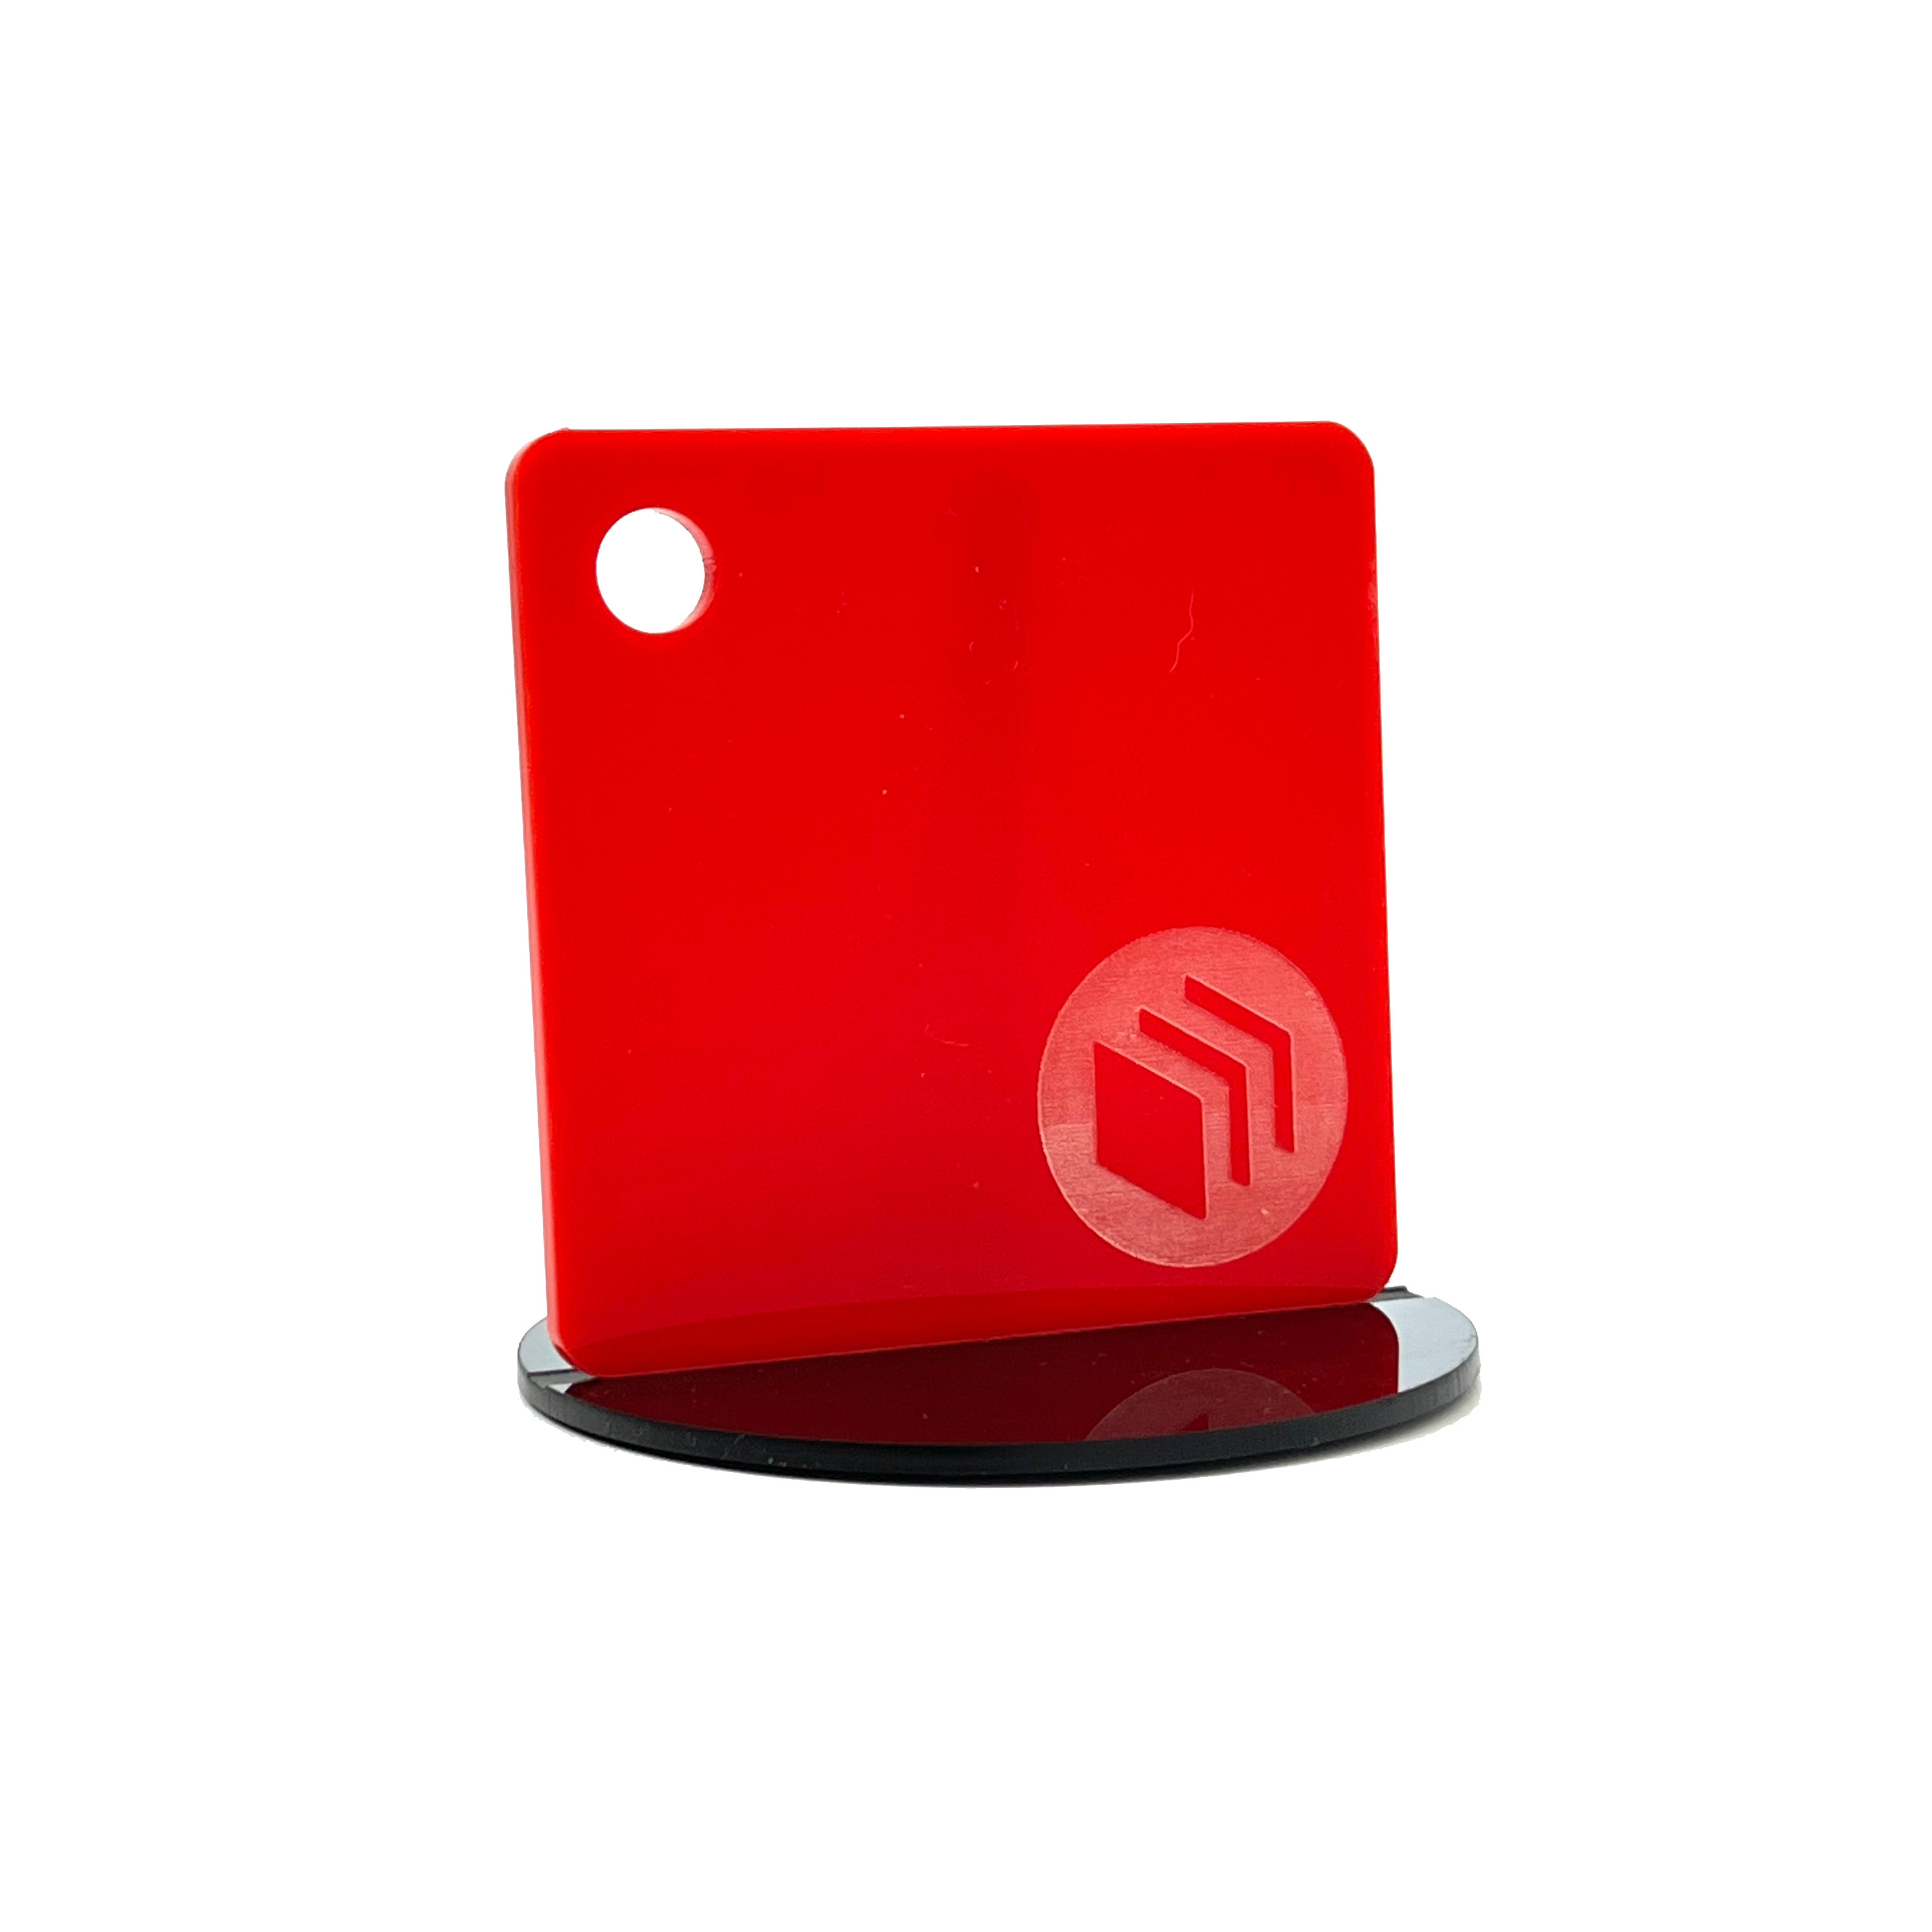 Plancha de acrílico colores 30x40cm - 3mm de espesor  Rojo